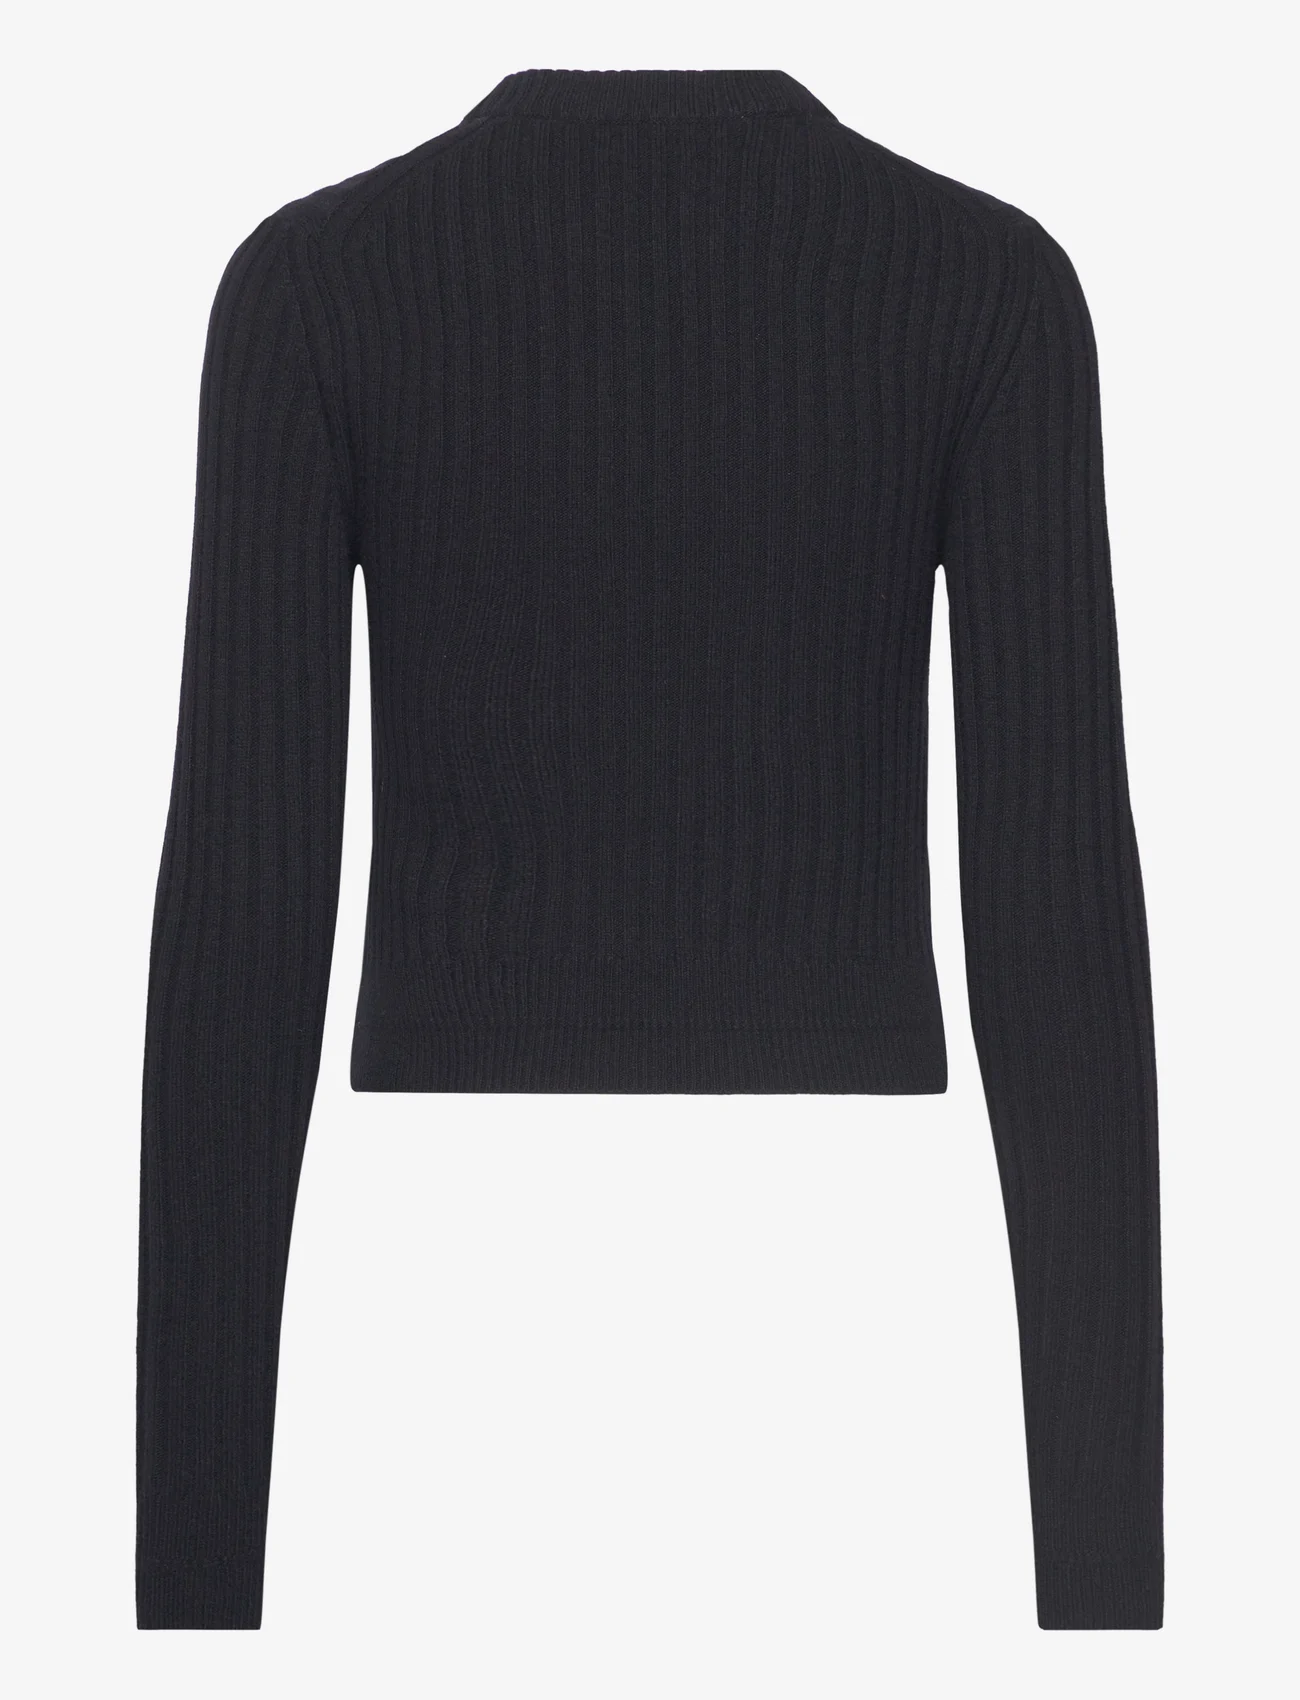 Filippa K - Wool Rib Sweater - džemperi - black - 1